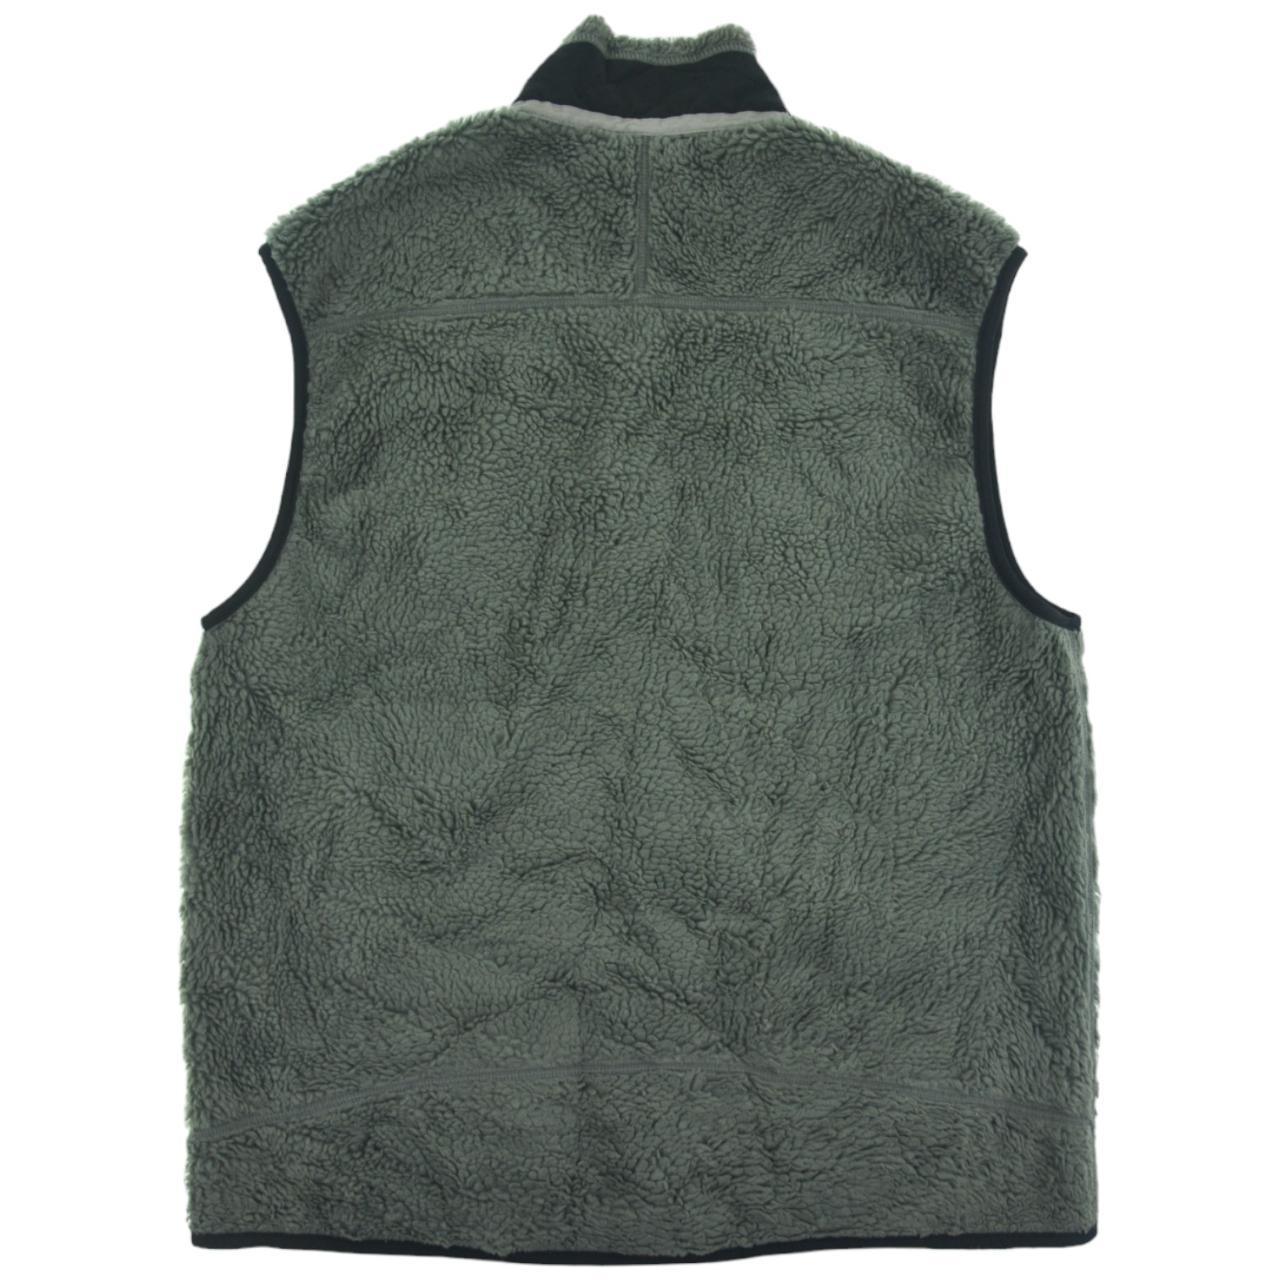 Vintage Patagonia Retro X Fleece Gilet Size M - Known Source